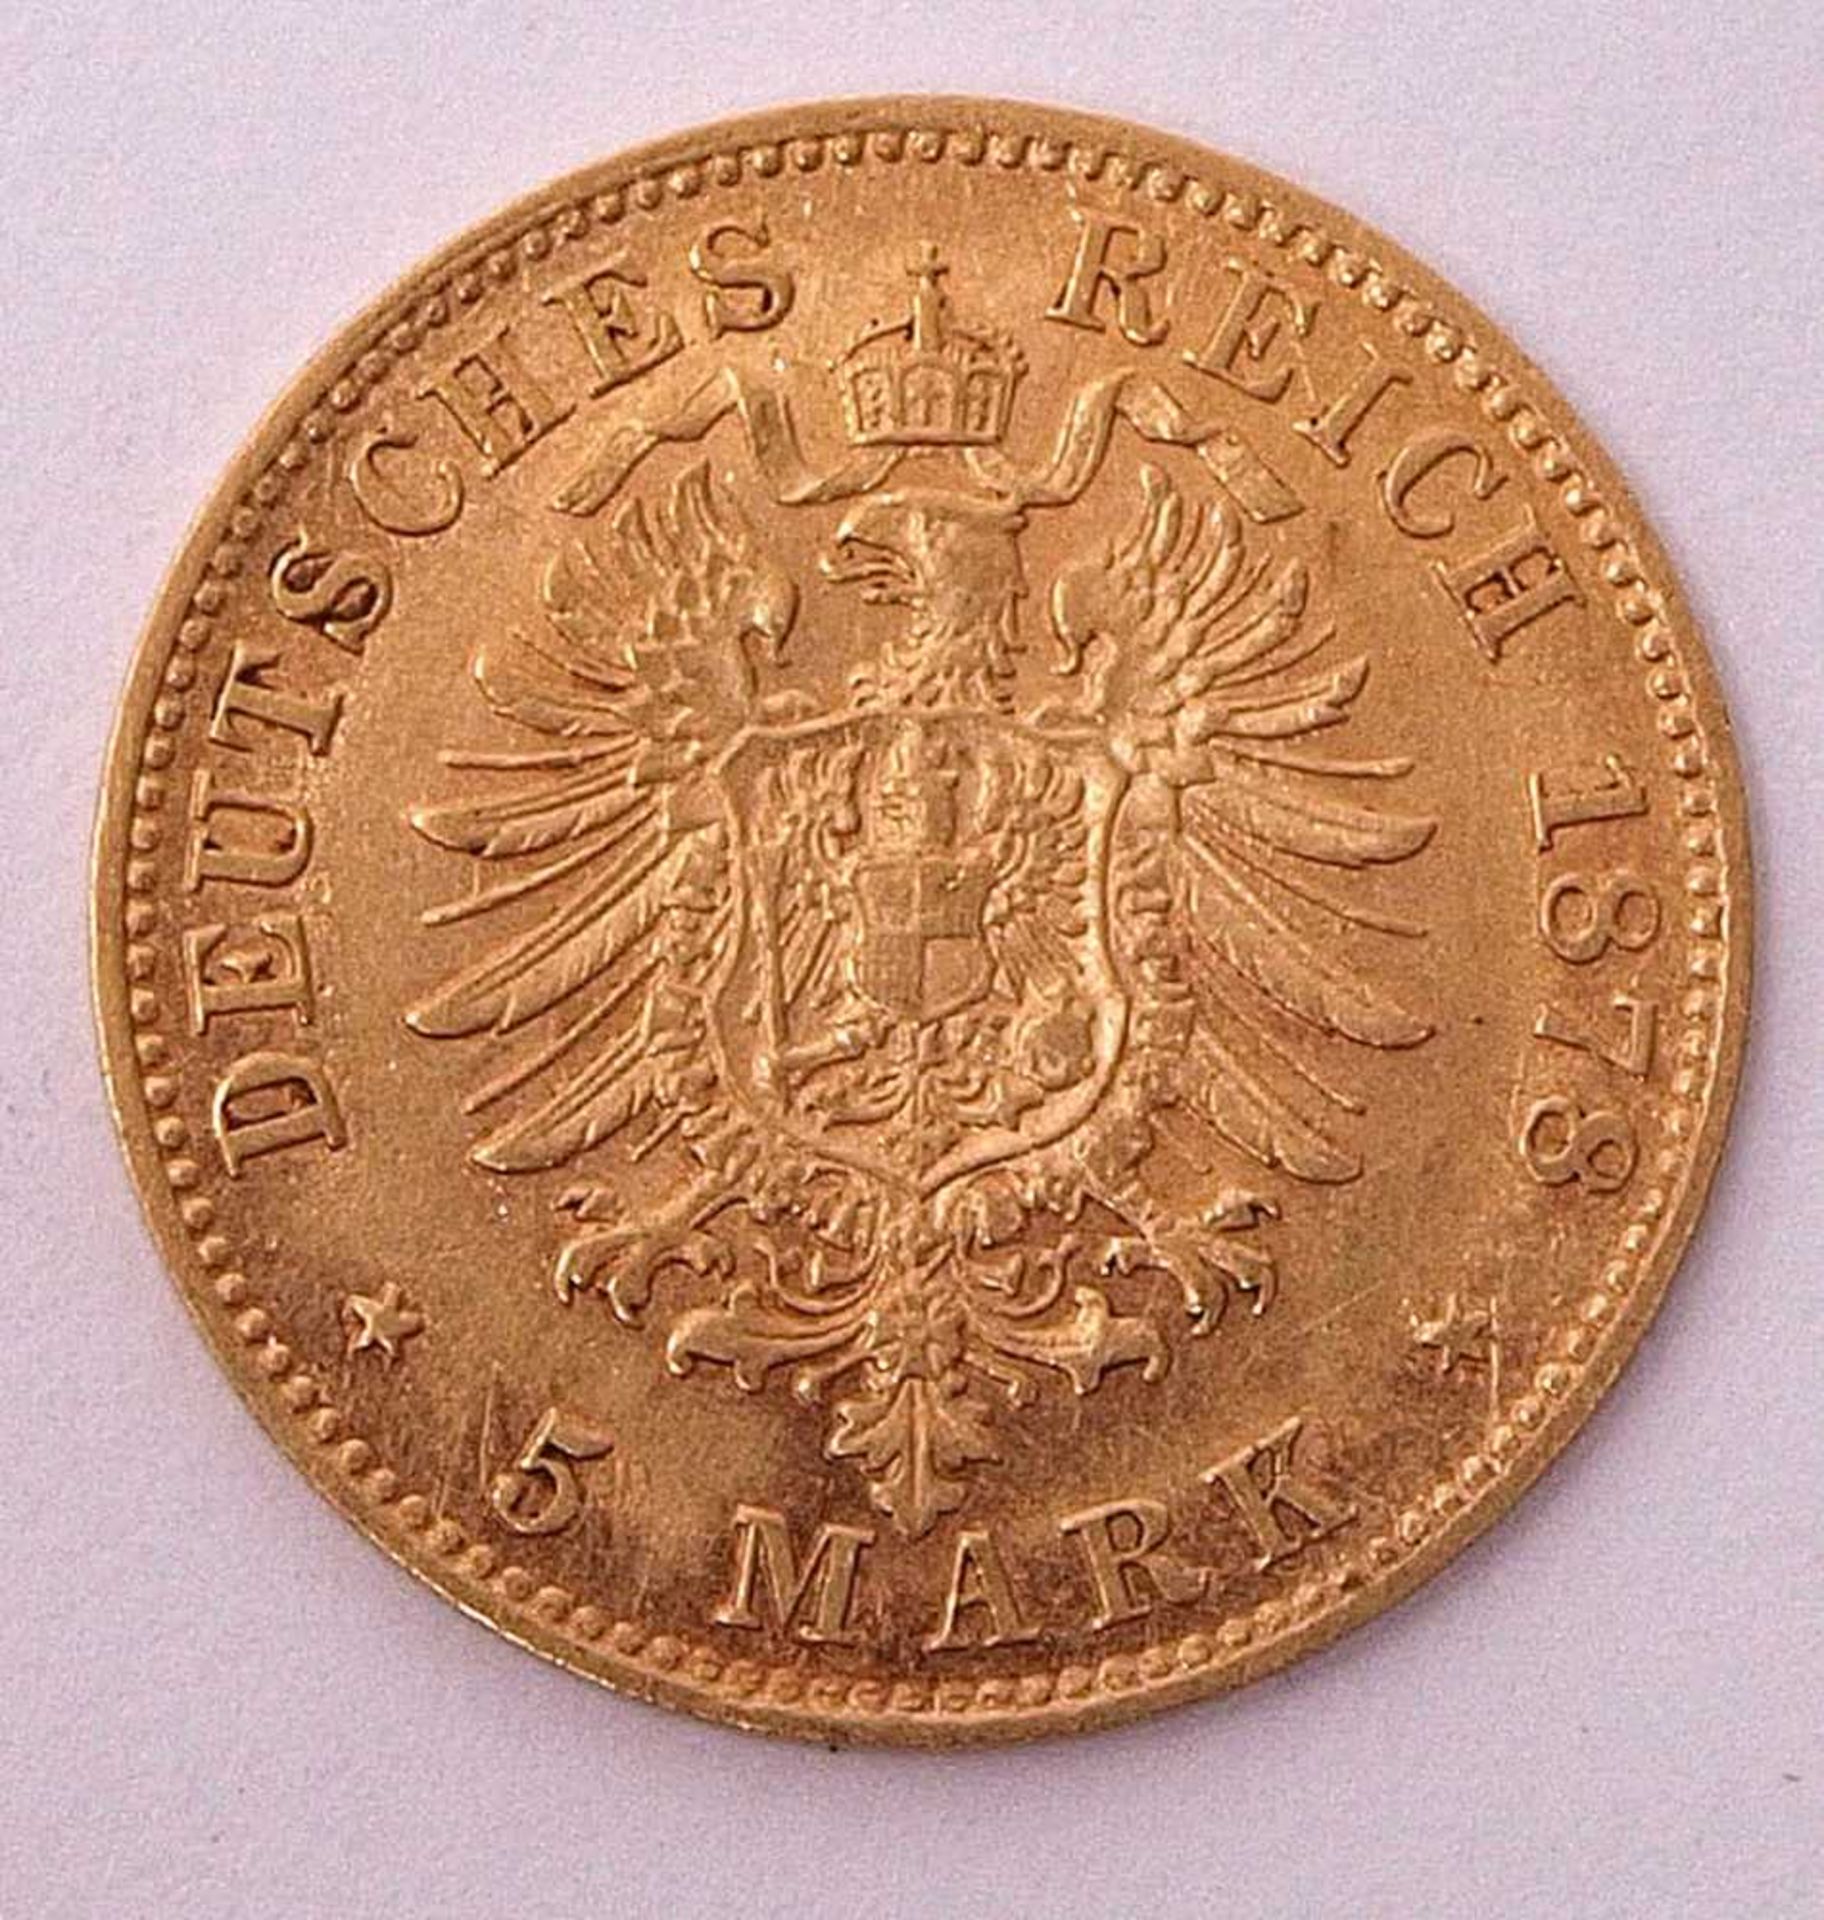 5 Mark, Deutsches Reich 1878, Ludwig II. von BayernMünzstätte D. Guter Zustand. - Bild 2 aus 2